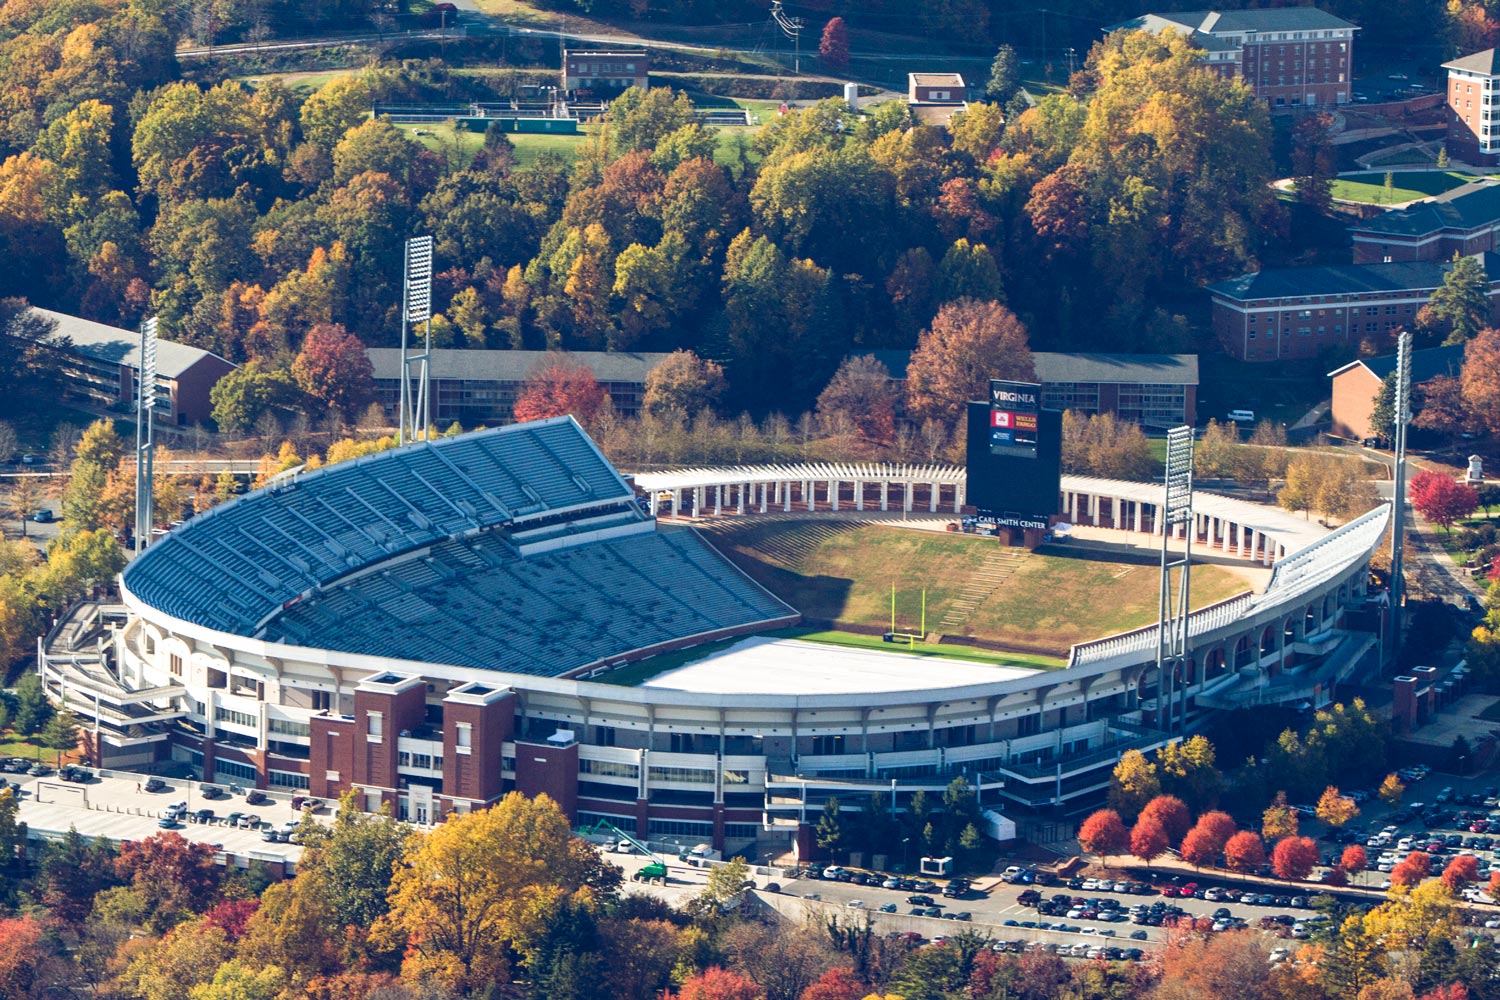 Aerial view of Scott Stadium